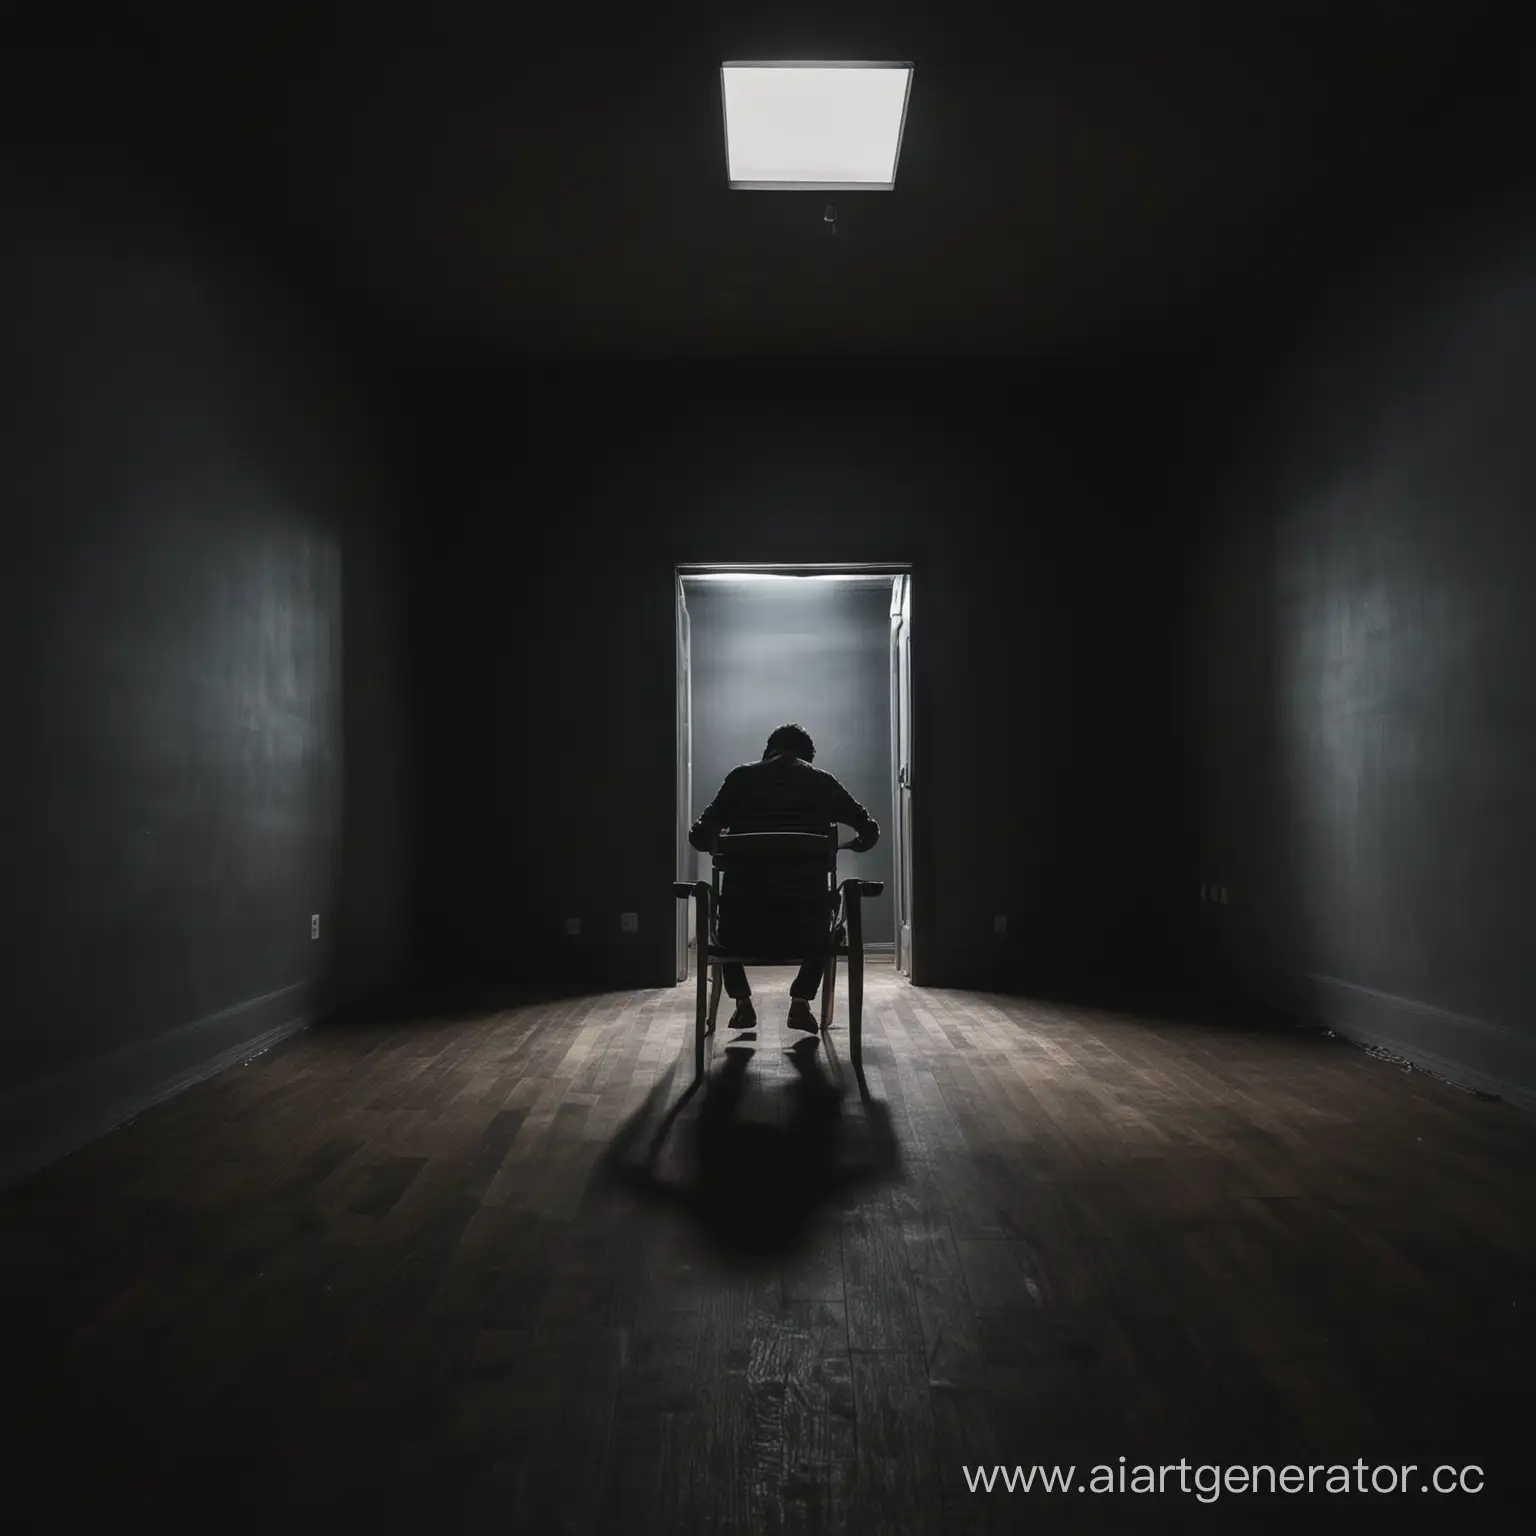 один человек сидит на стуле посреди темной комнаты
